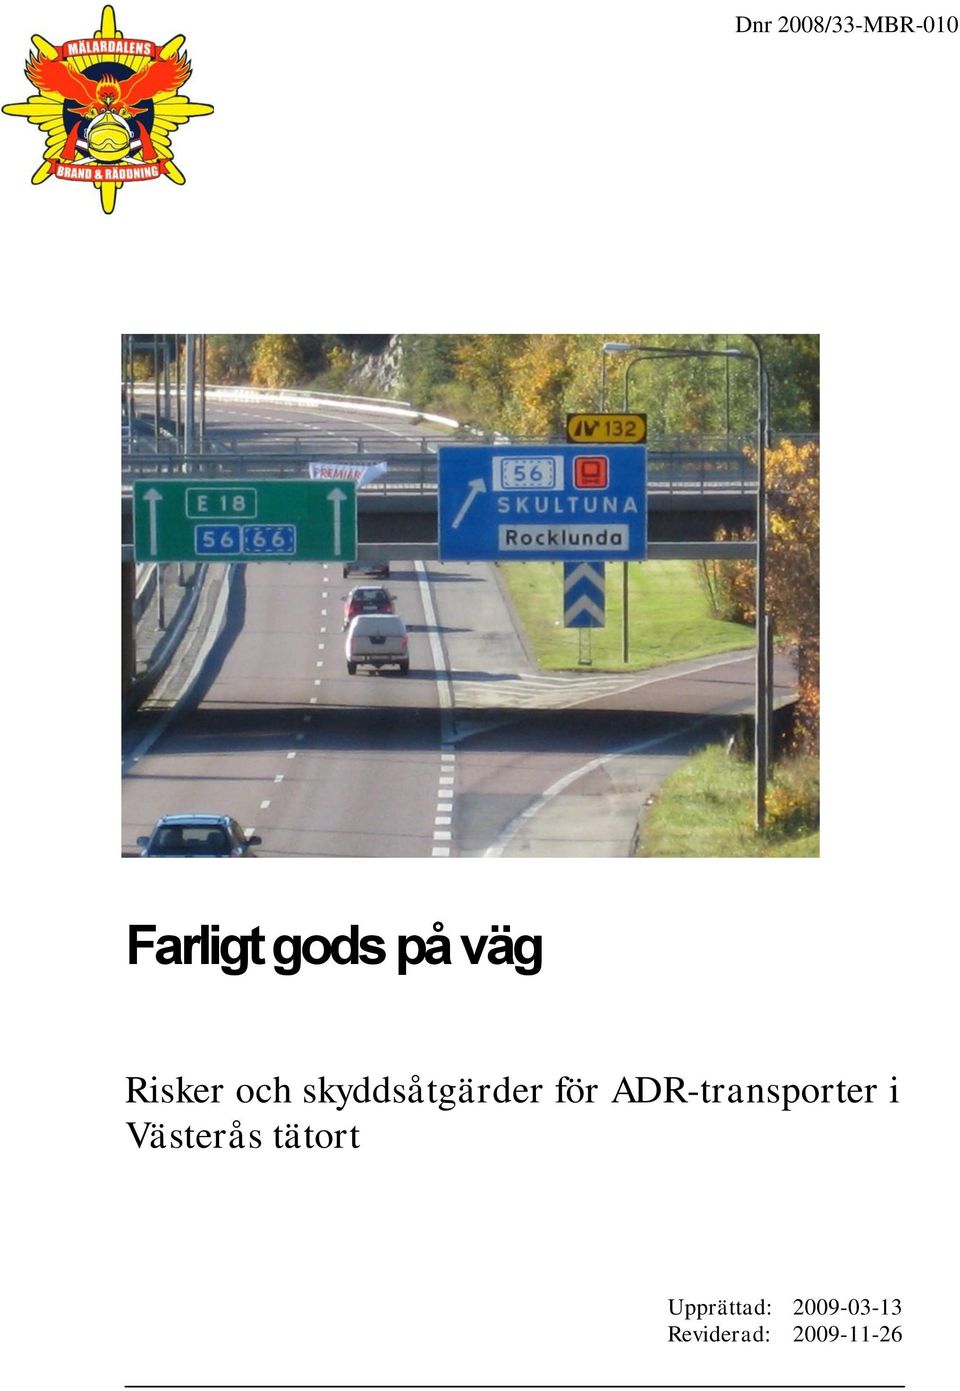 ADR-transporter i Västerås tätort